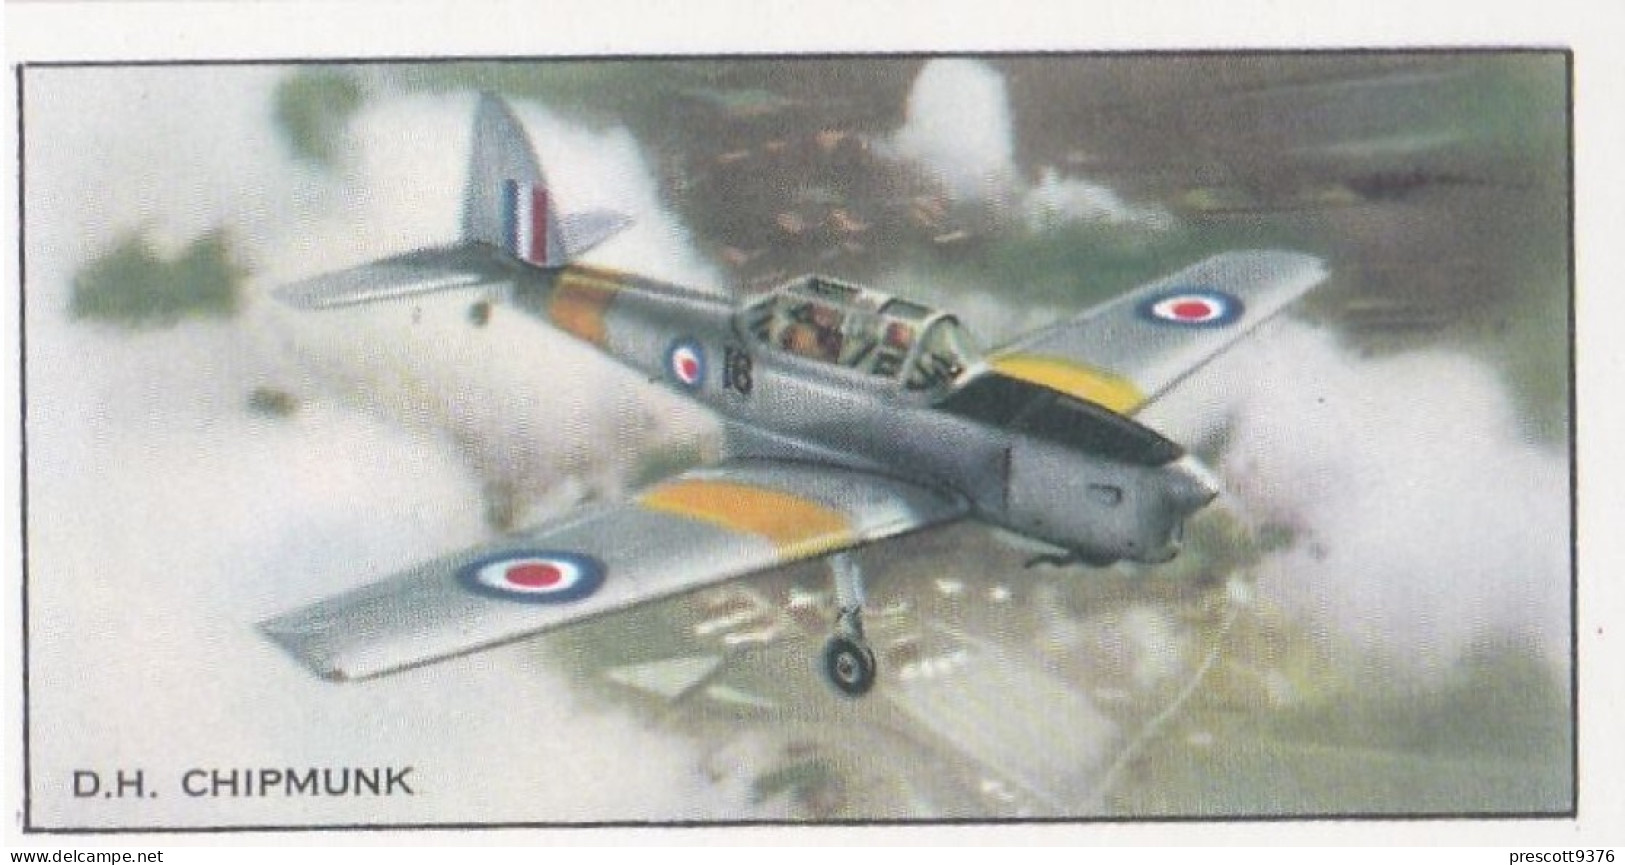 5 DH Chipmunk, Trainer  - Modern British Aircraft 1953 - Beaulah Tea -  Trade Card - Churchman